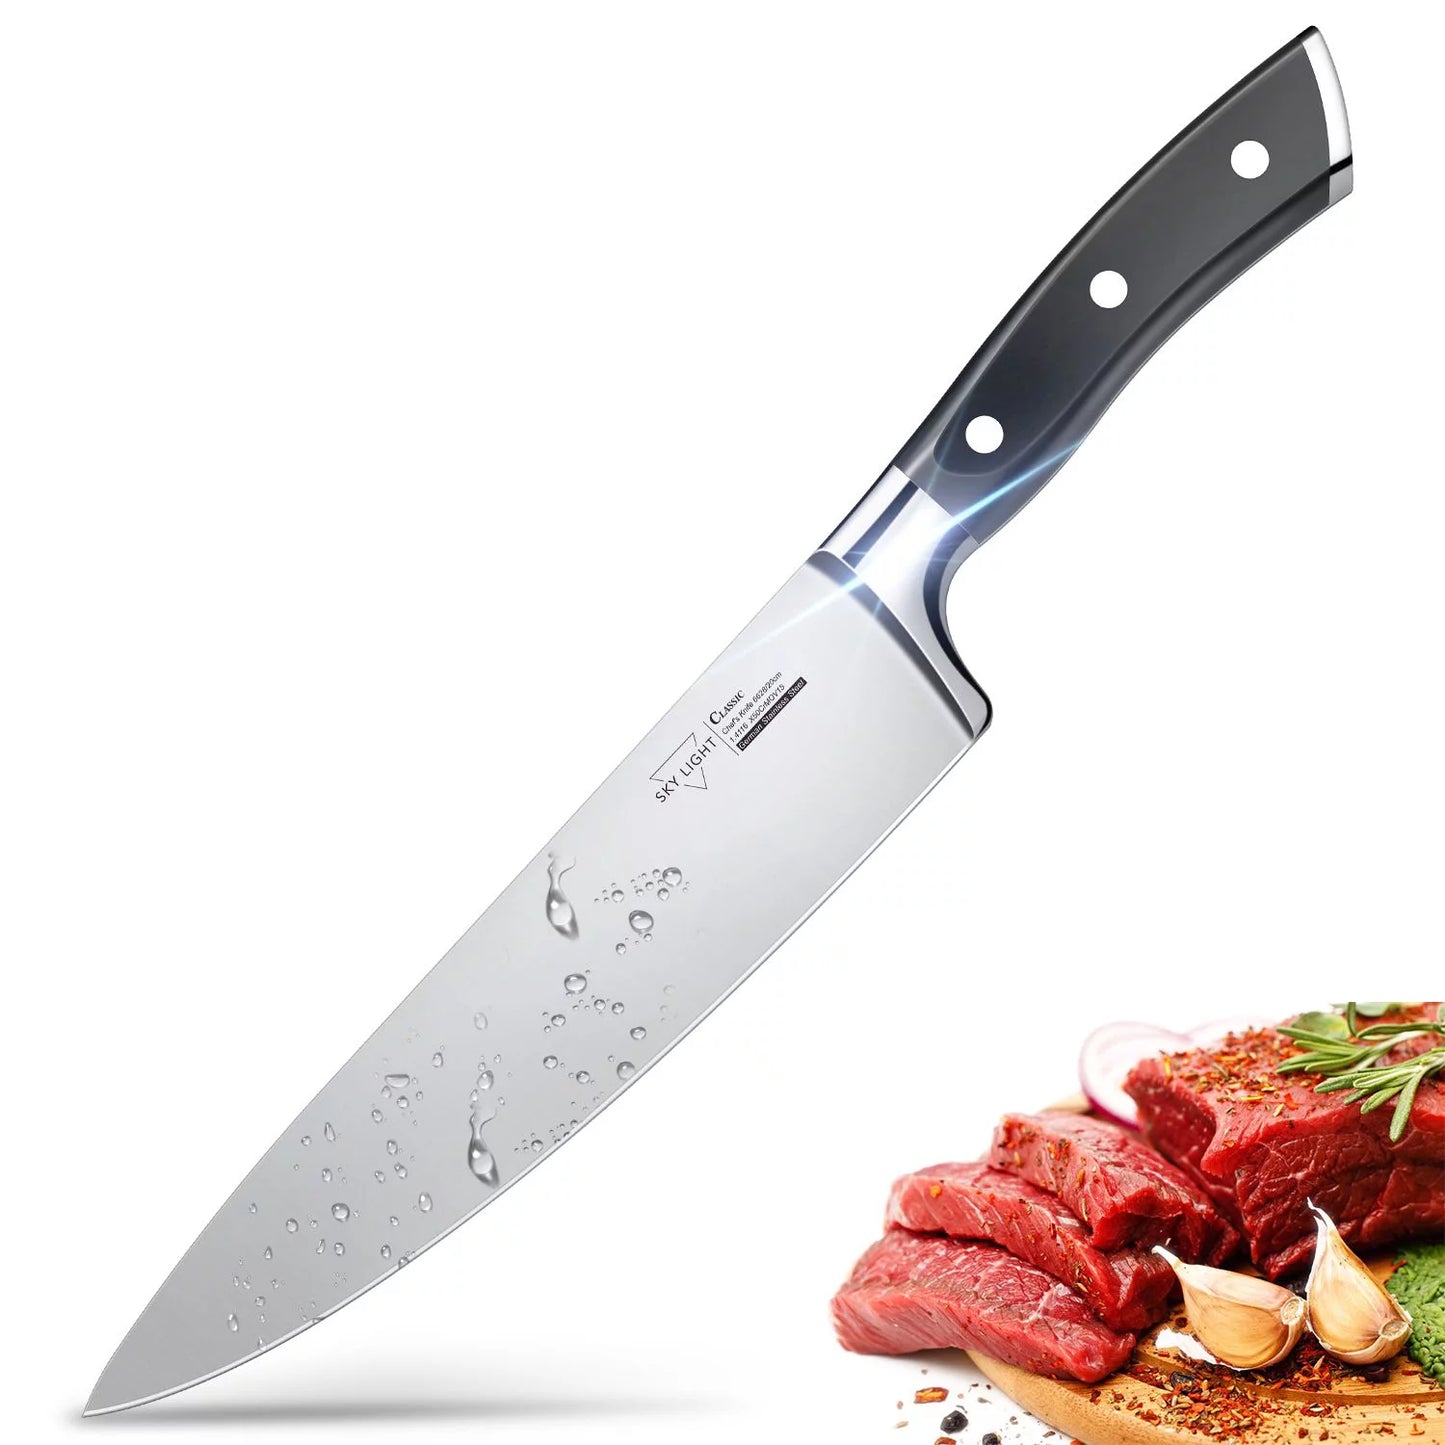 SKY LIGHT 廚師刀 - 8 英寸專業菜刀德國高碳不銹鋼廚師刀帶人體工學手柄和禮品盒